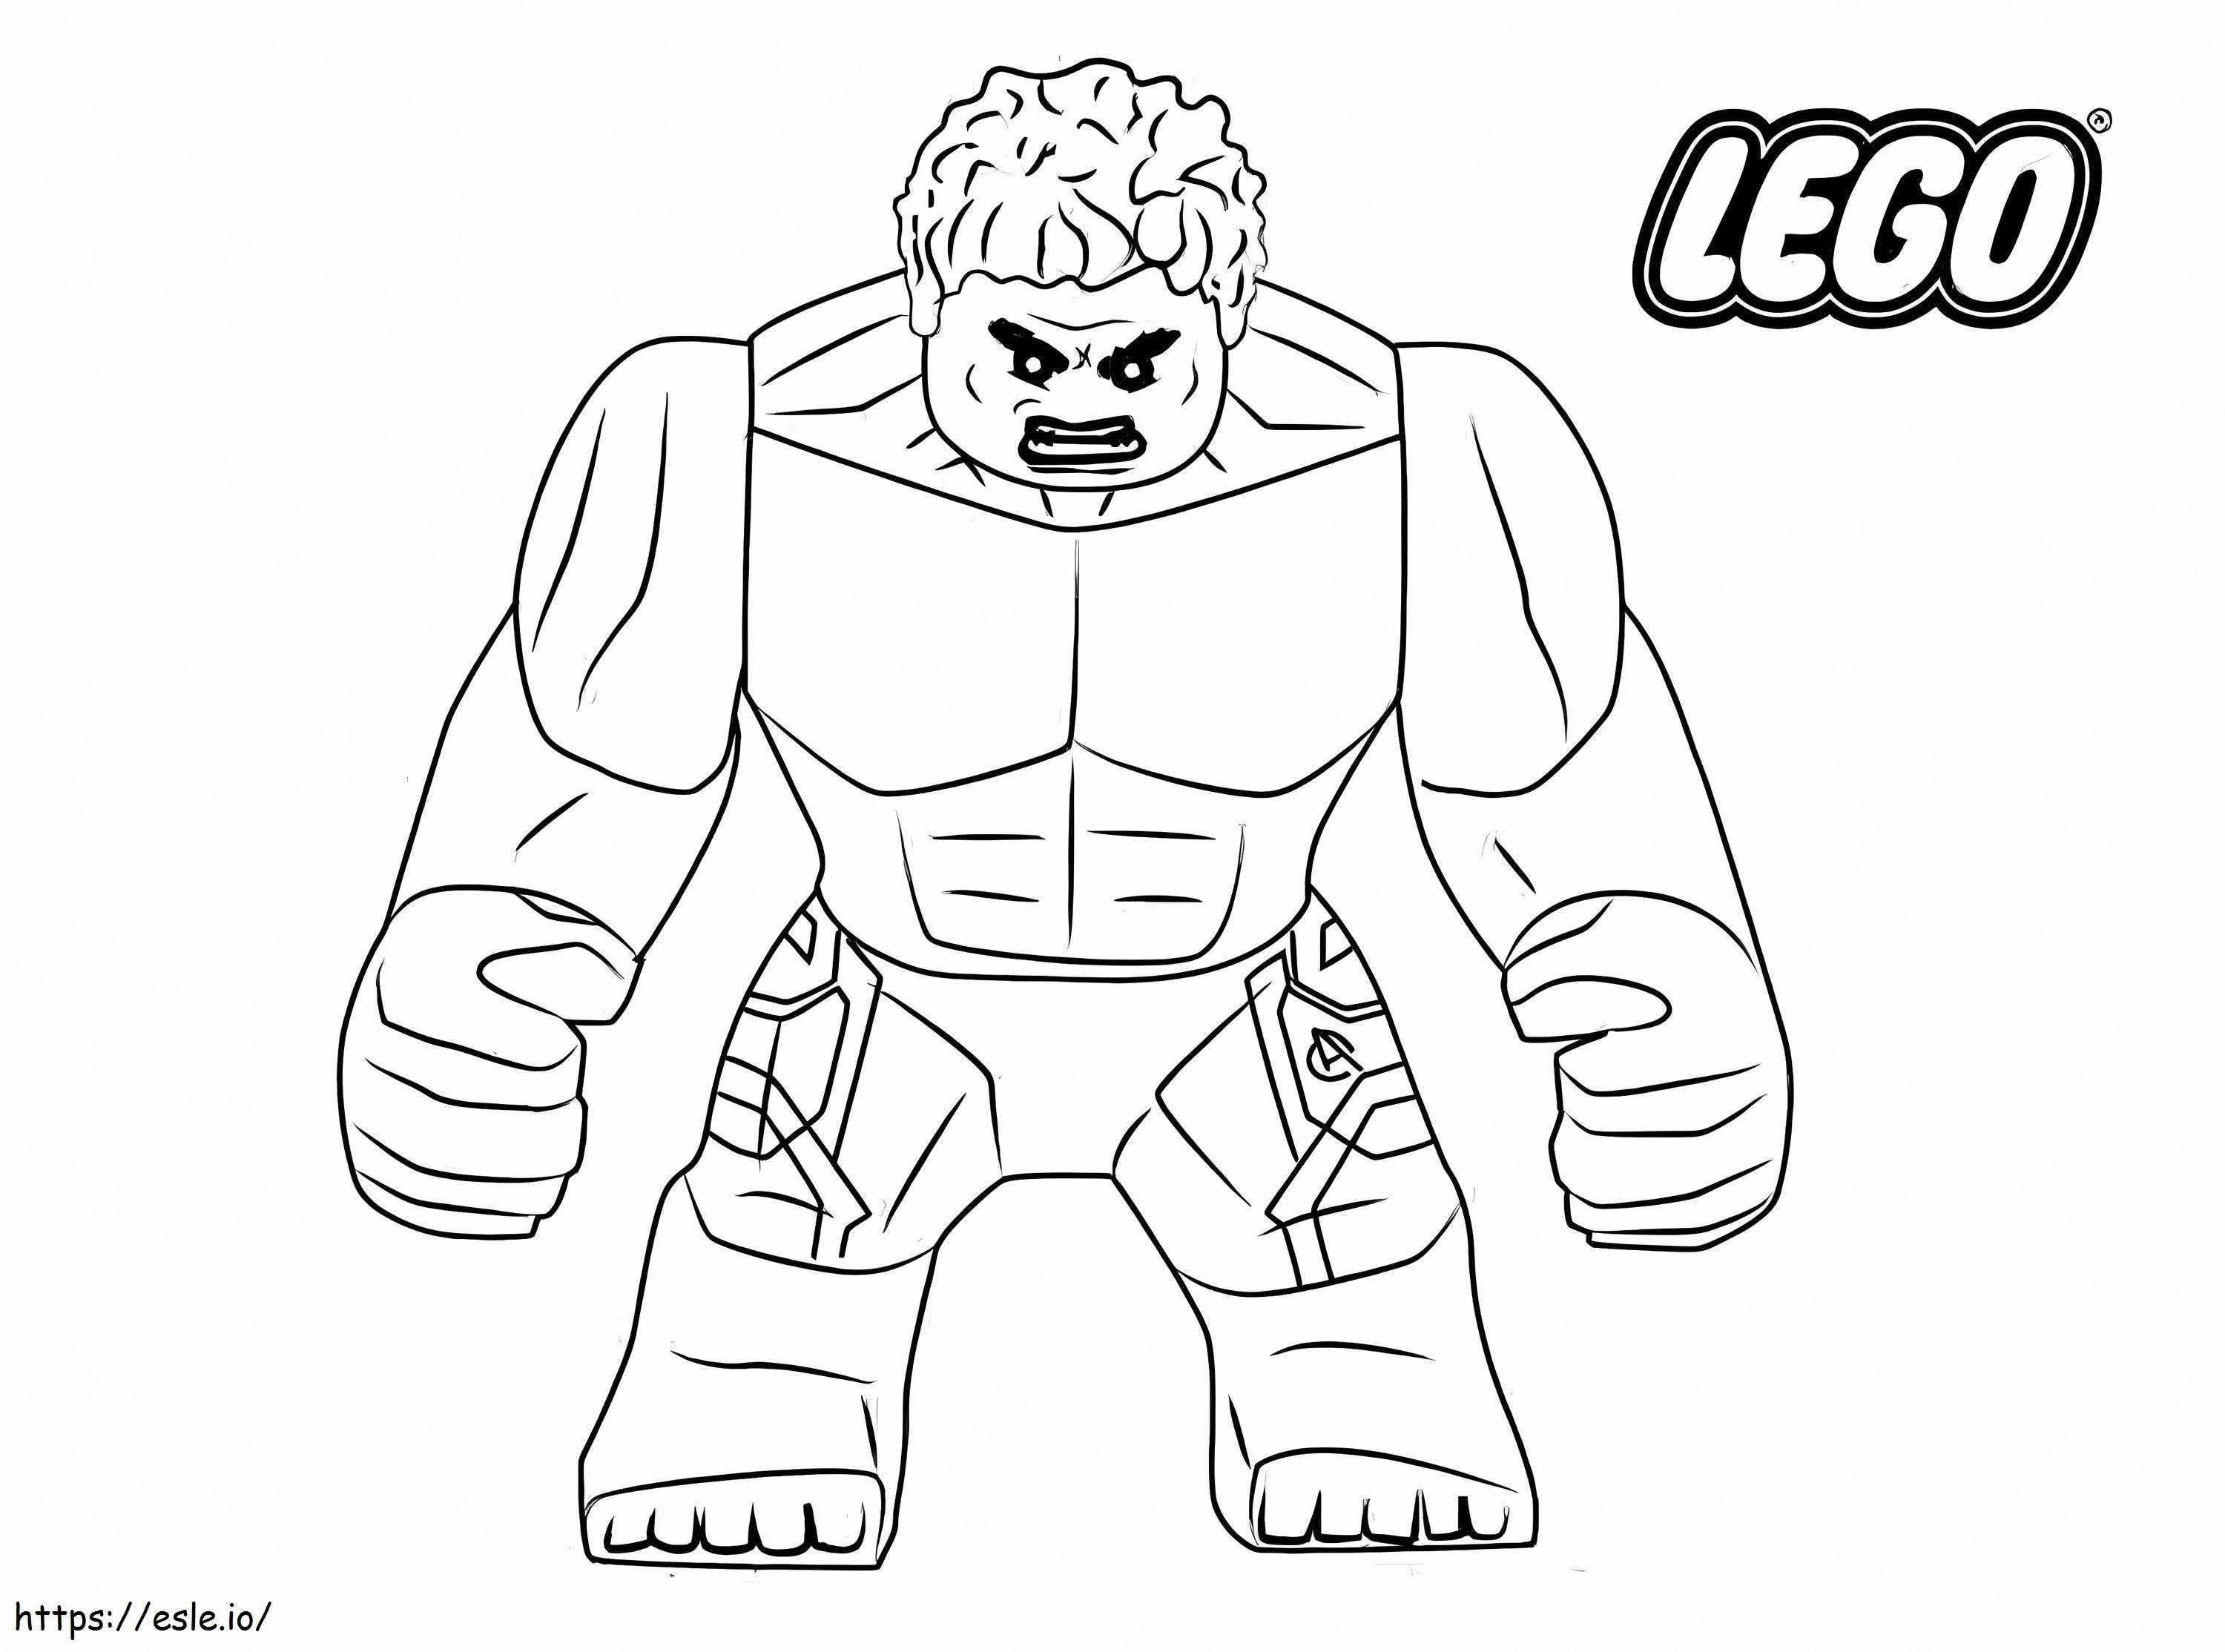 Wściekły Lego Hulk kolorowanka